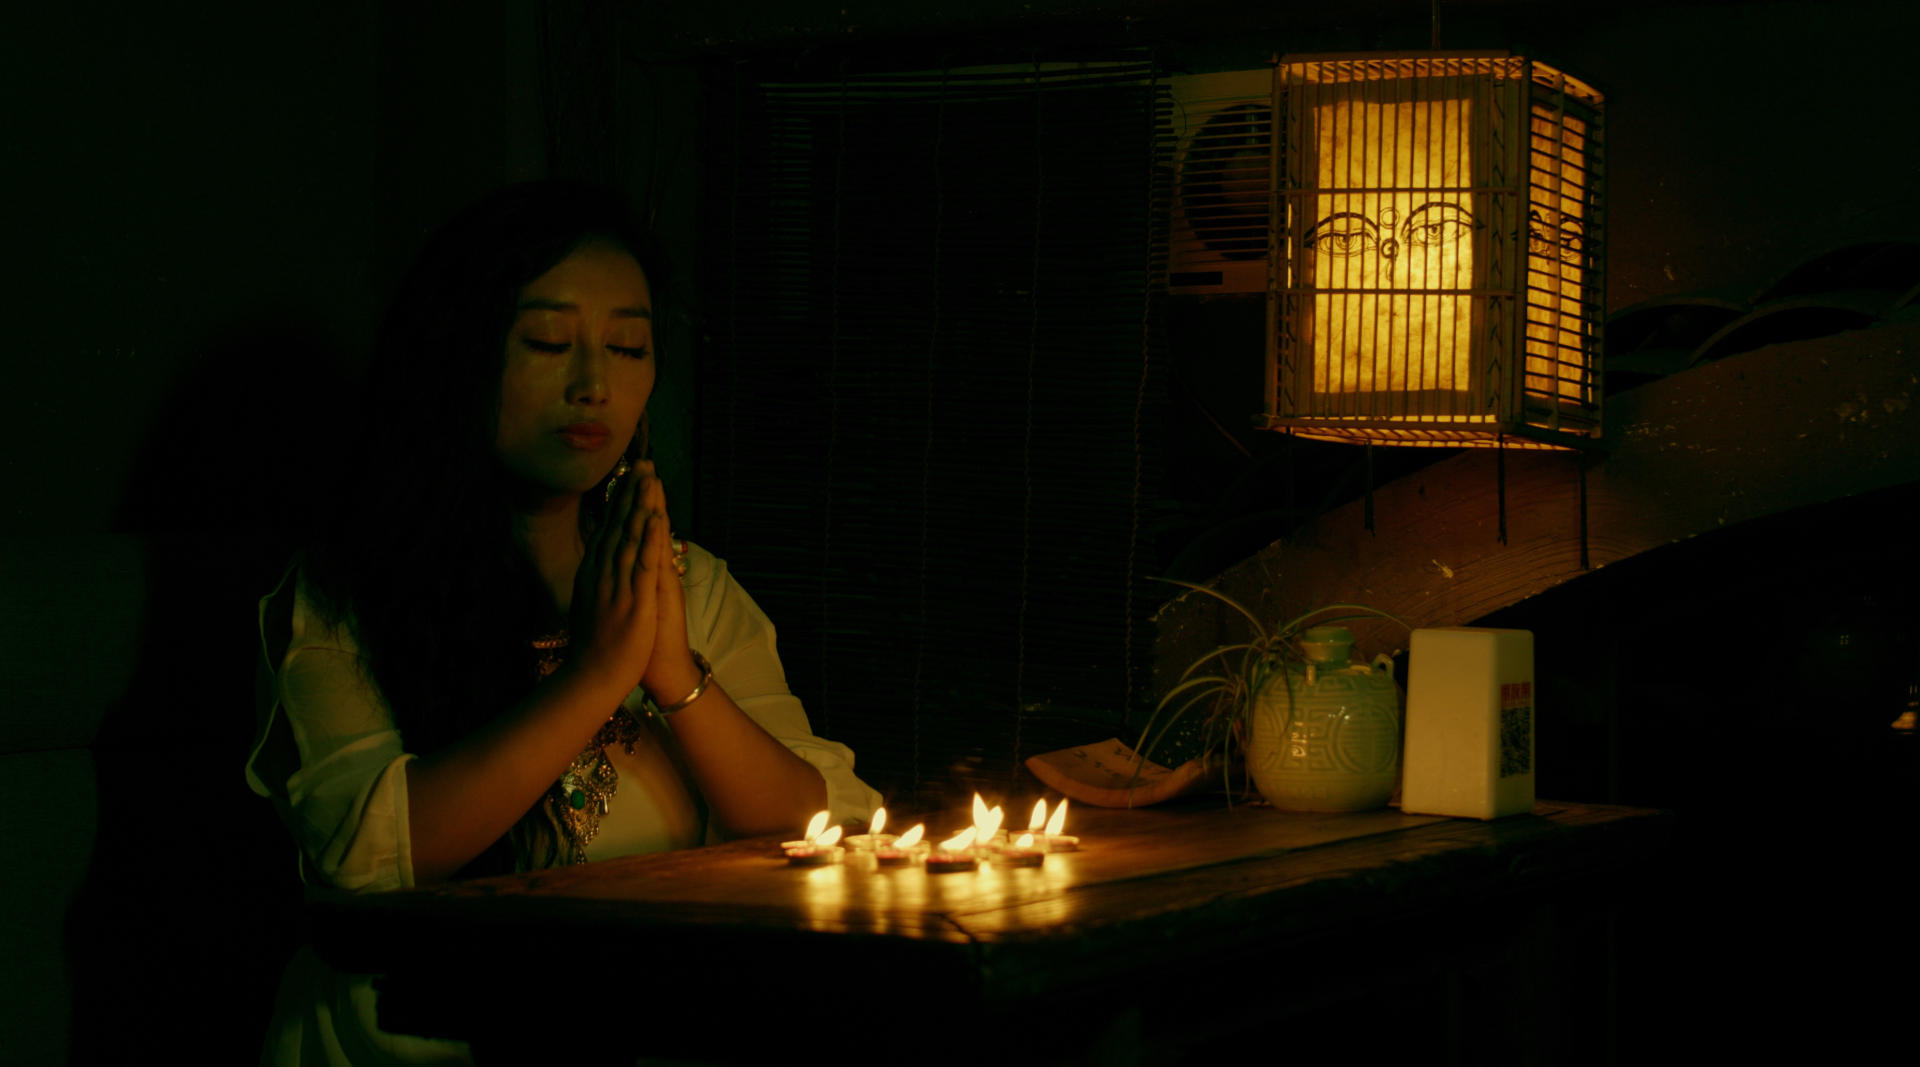 藏族美女歌手 泽央卓玛 最新温情单曲《爸爸妈妈》MV首发 4K